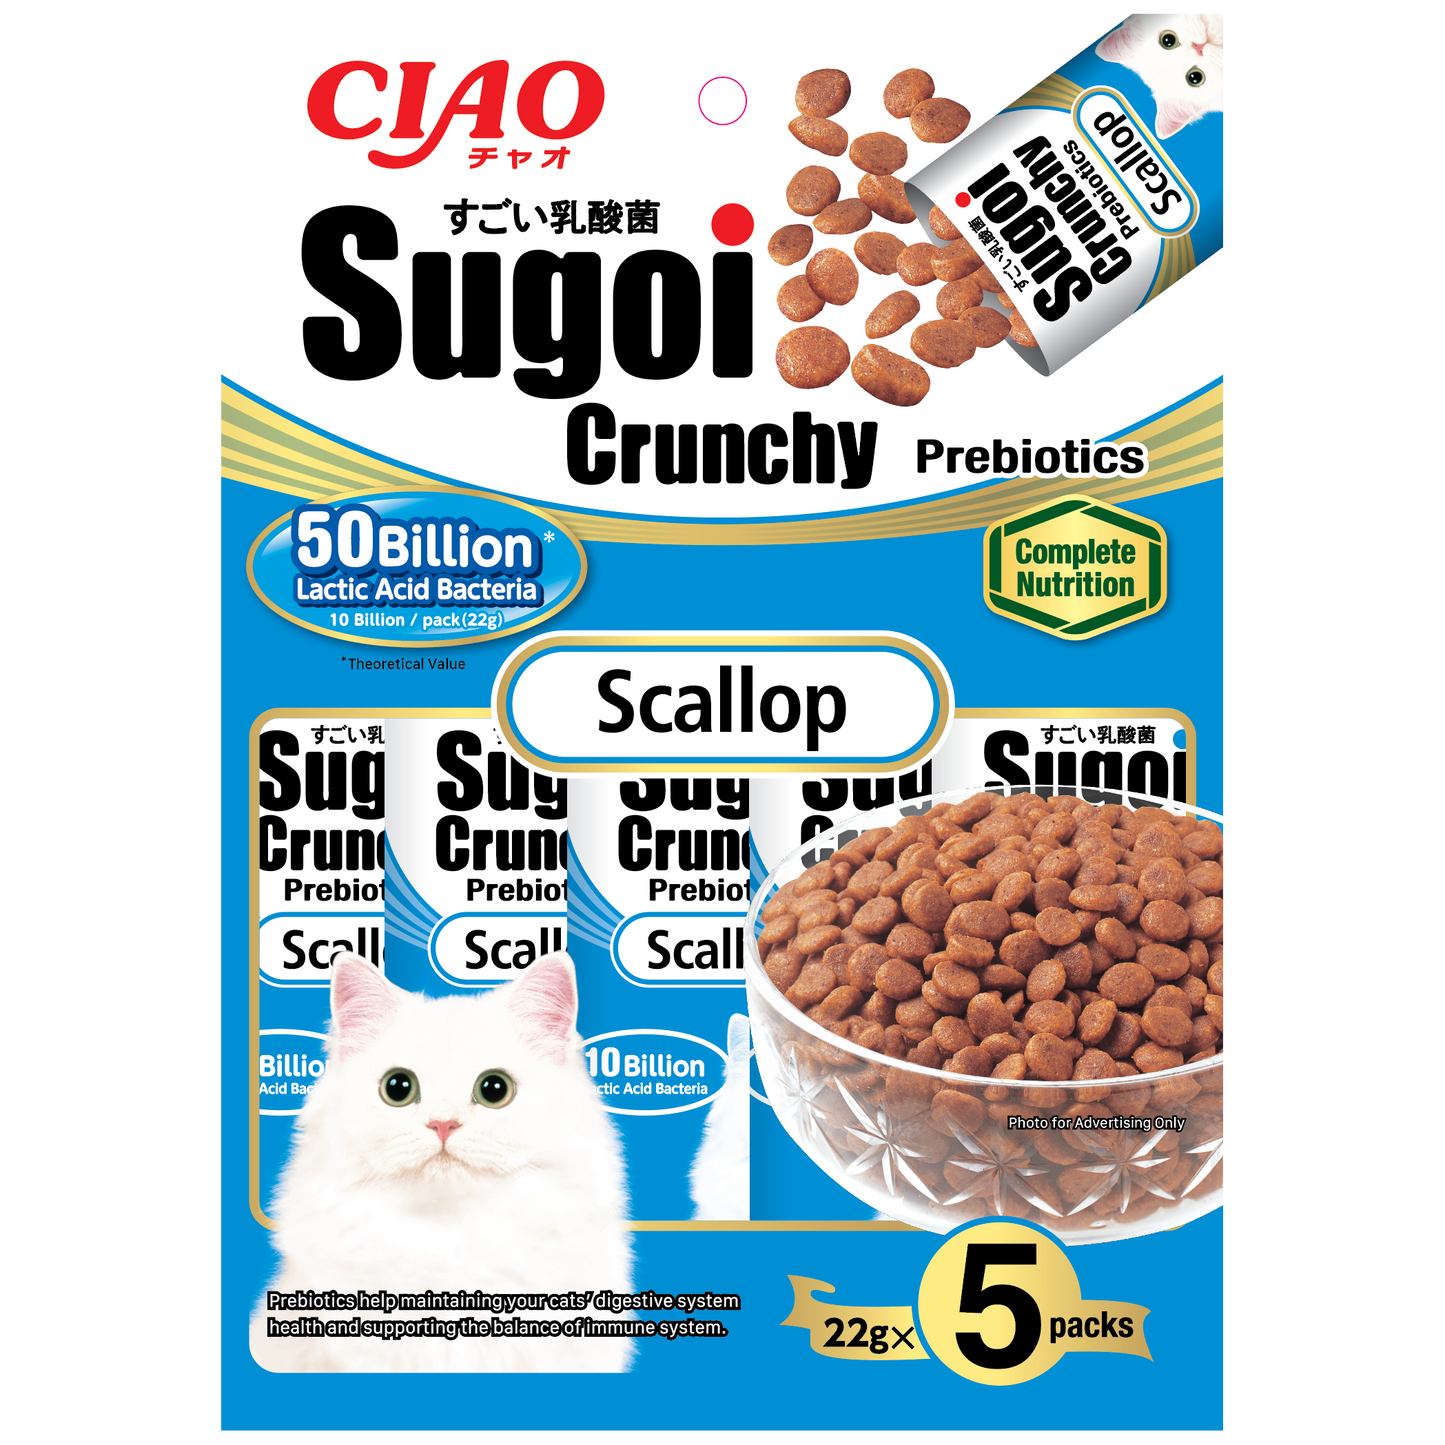 CIAO Sugoi Crunchy Scallop Flavor Plus Prebiotics 22g x 5